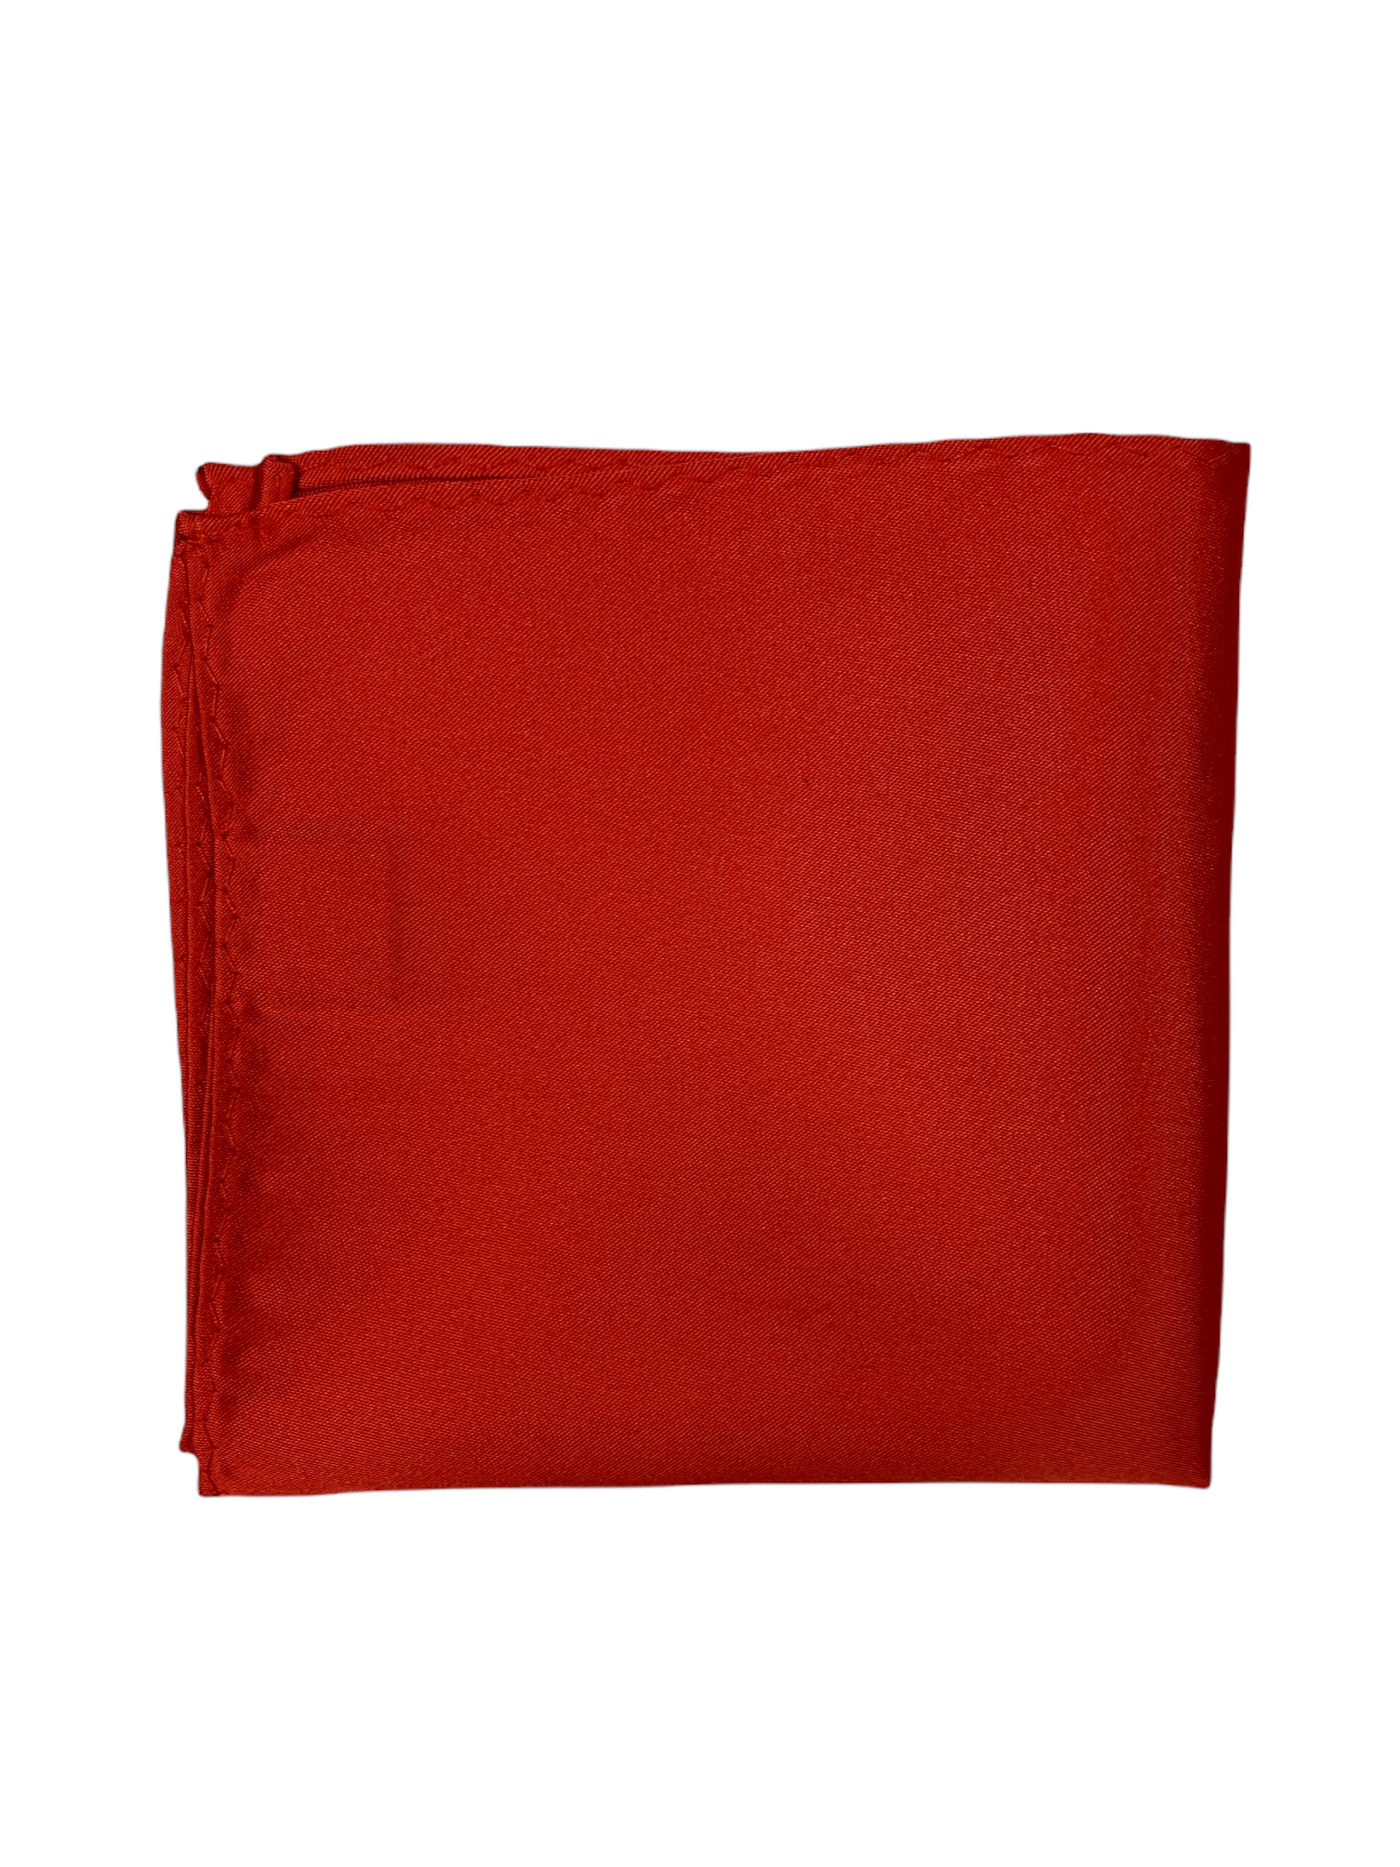 Mouchoir de poche satiné rouge clair